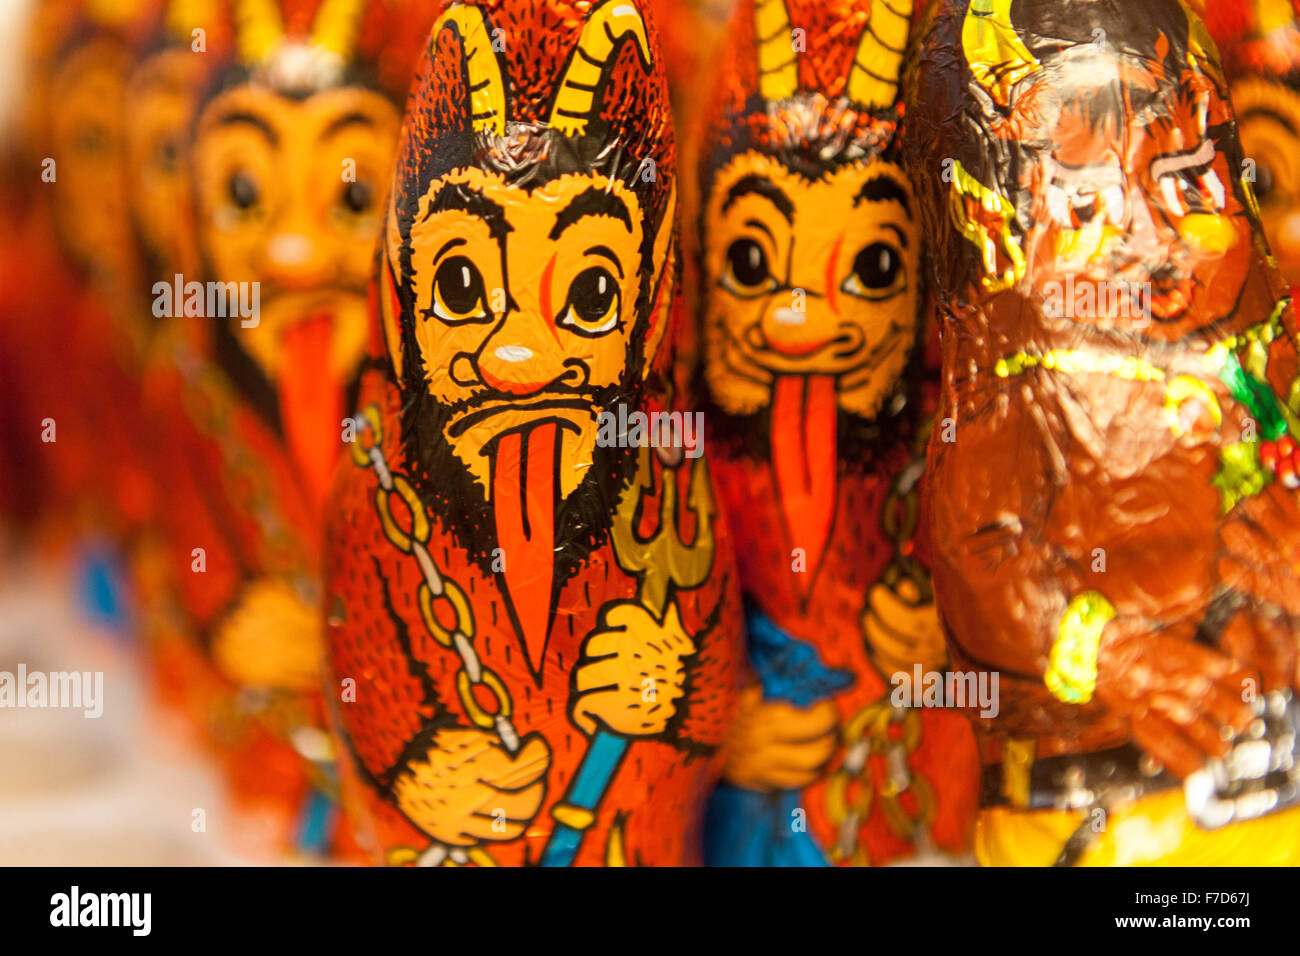 Figuras de chocolate de demonios aparece en un supermercado. Foto de stock